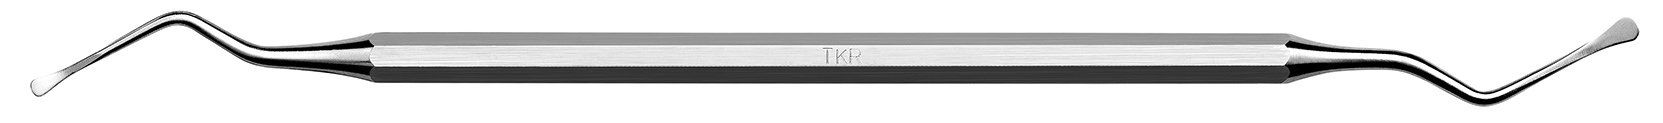 Instrument pentru tunelizare TKR